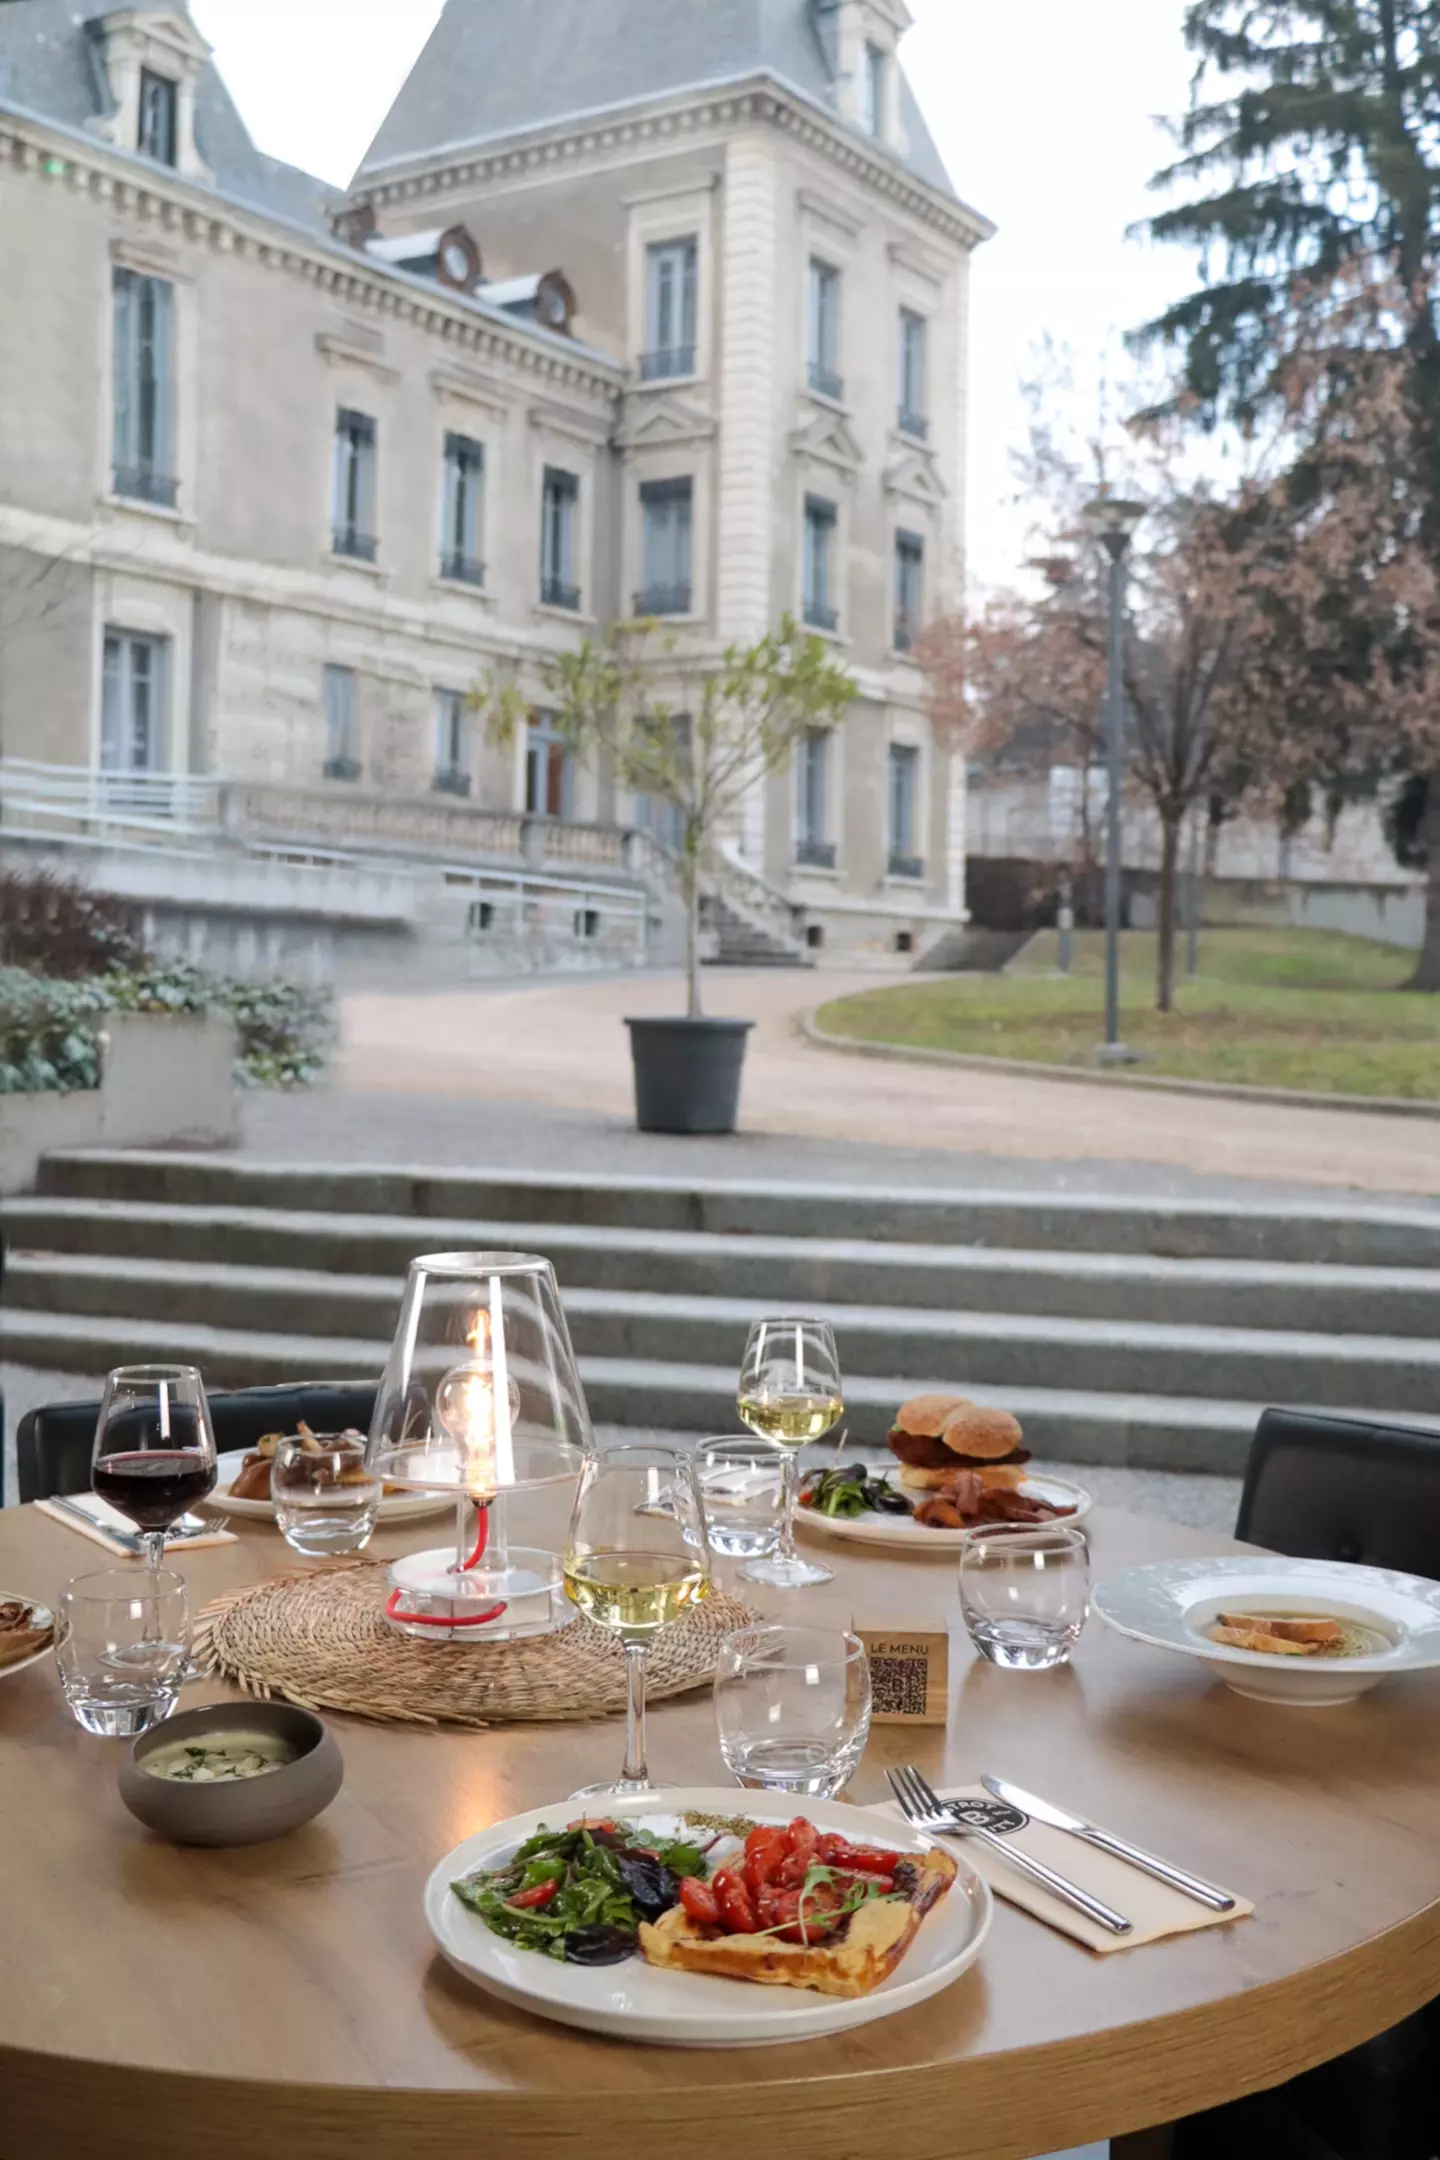 Blick auf einen Terrassentisch im Bistrot City in Lyon Cité Internationale, gedeckt mit Tellern voller Gourmetessen, Gläsern mit Rot- und Weißwein, einer erleuchteten Laterne, mit einem großen klassischen Gebäude im Hintergrund.